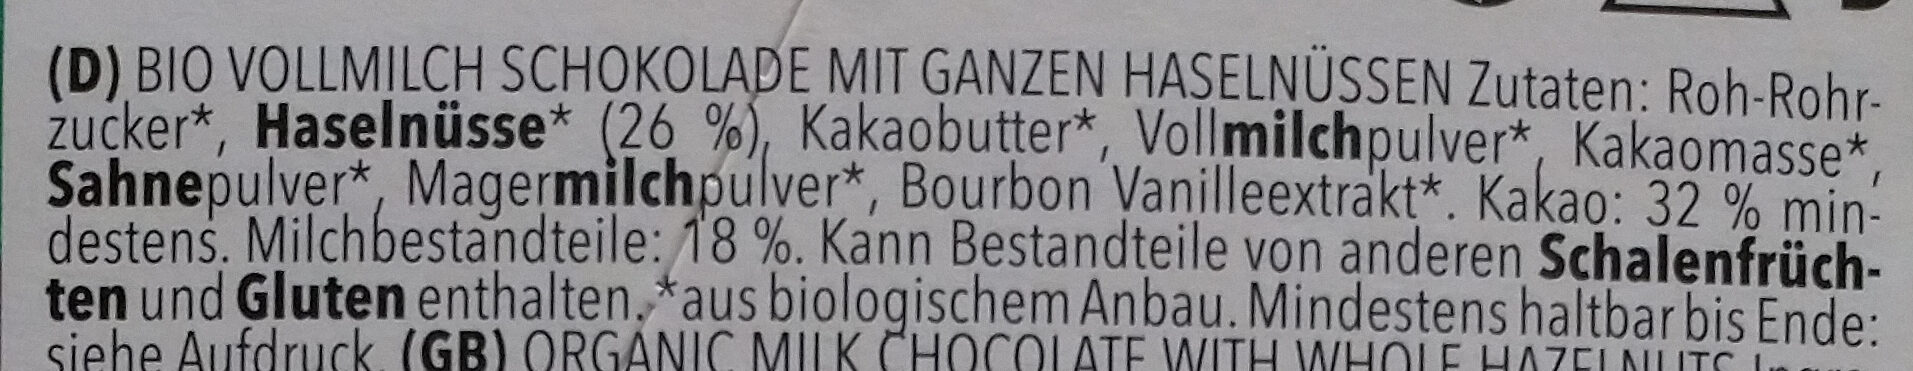 Vollmilch GanzNuss Schokolade - Zutaten